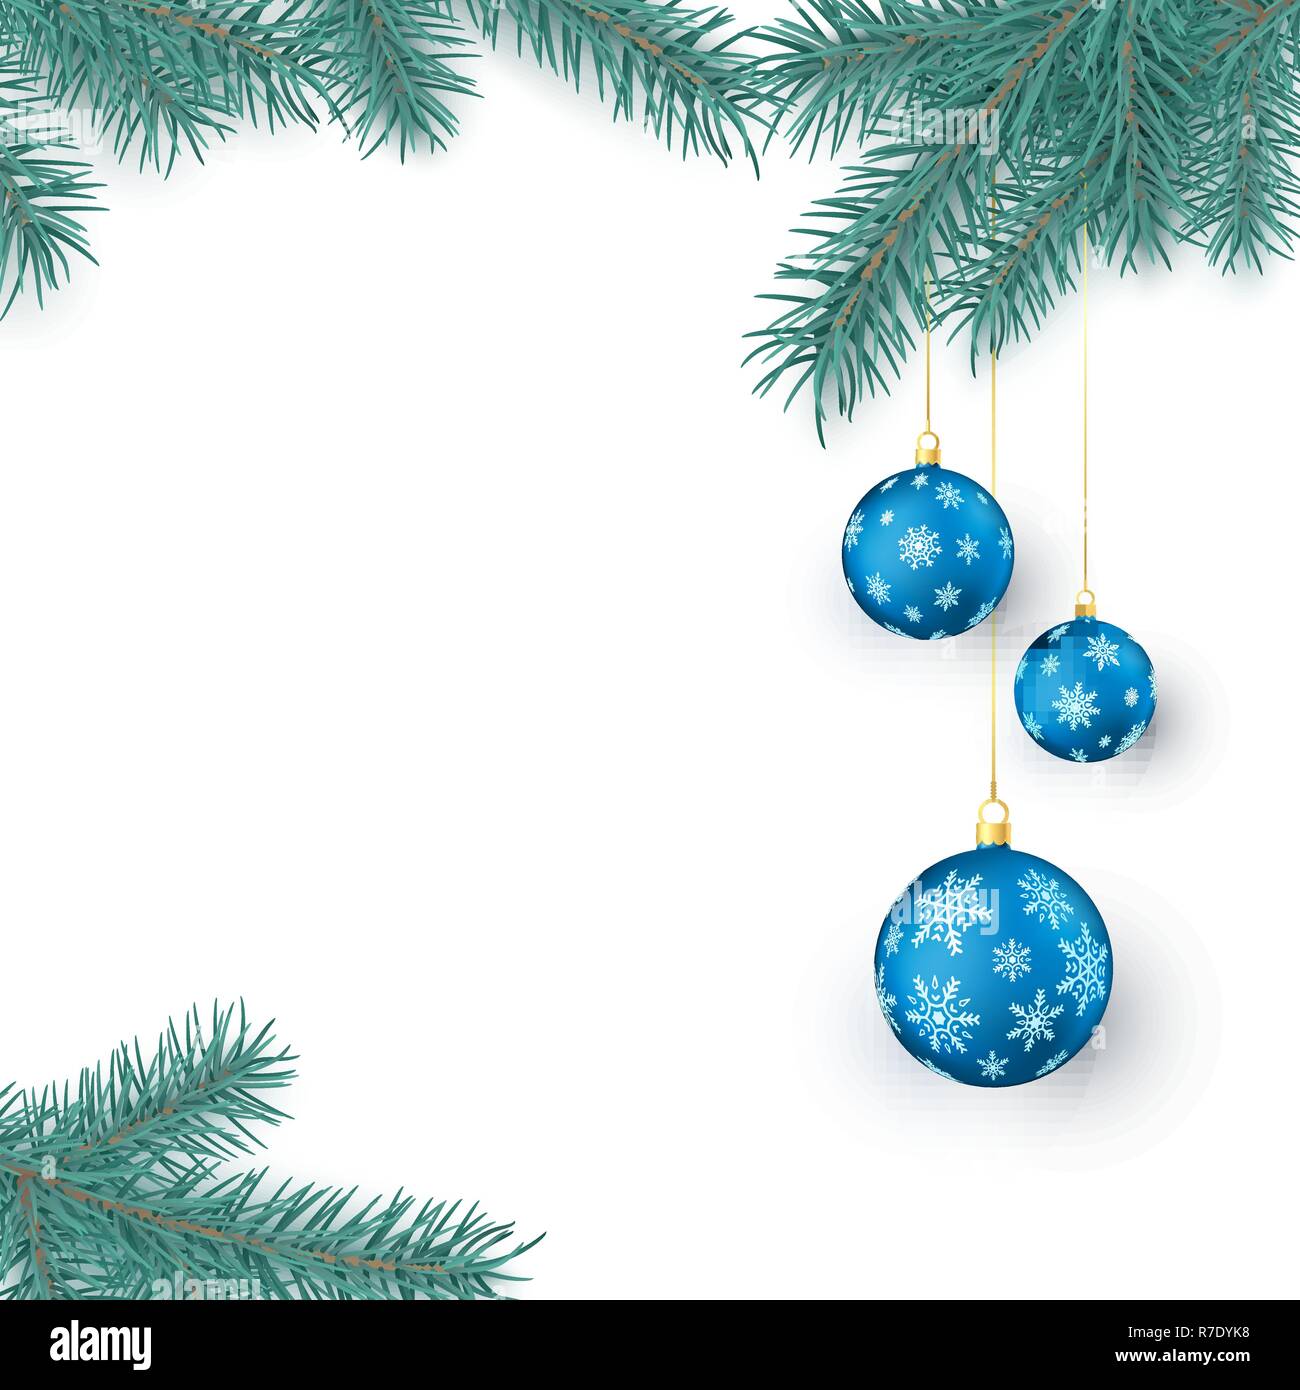 Rametti di abete e blu le palle di Natale con i fiocchi di neve ornamento con spazio per testo di saluto. Decorazione di Natale gli elementi isolati su sfondo bianco. Illustrazione Vettoriale